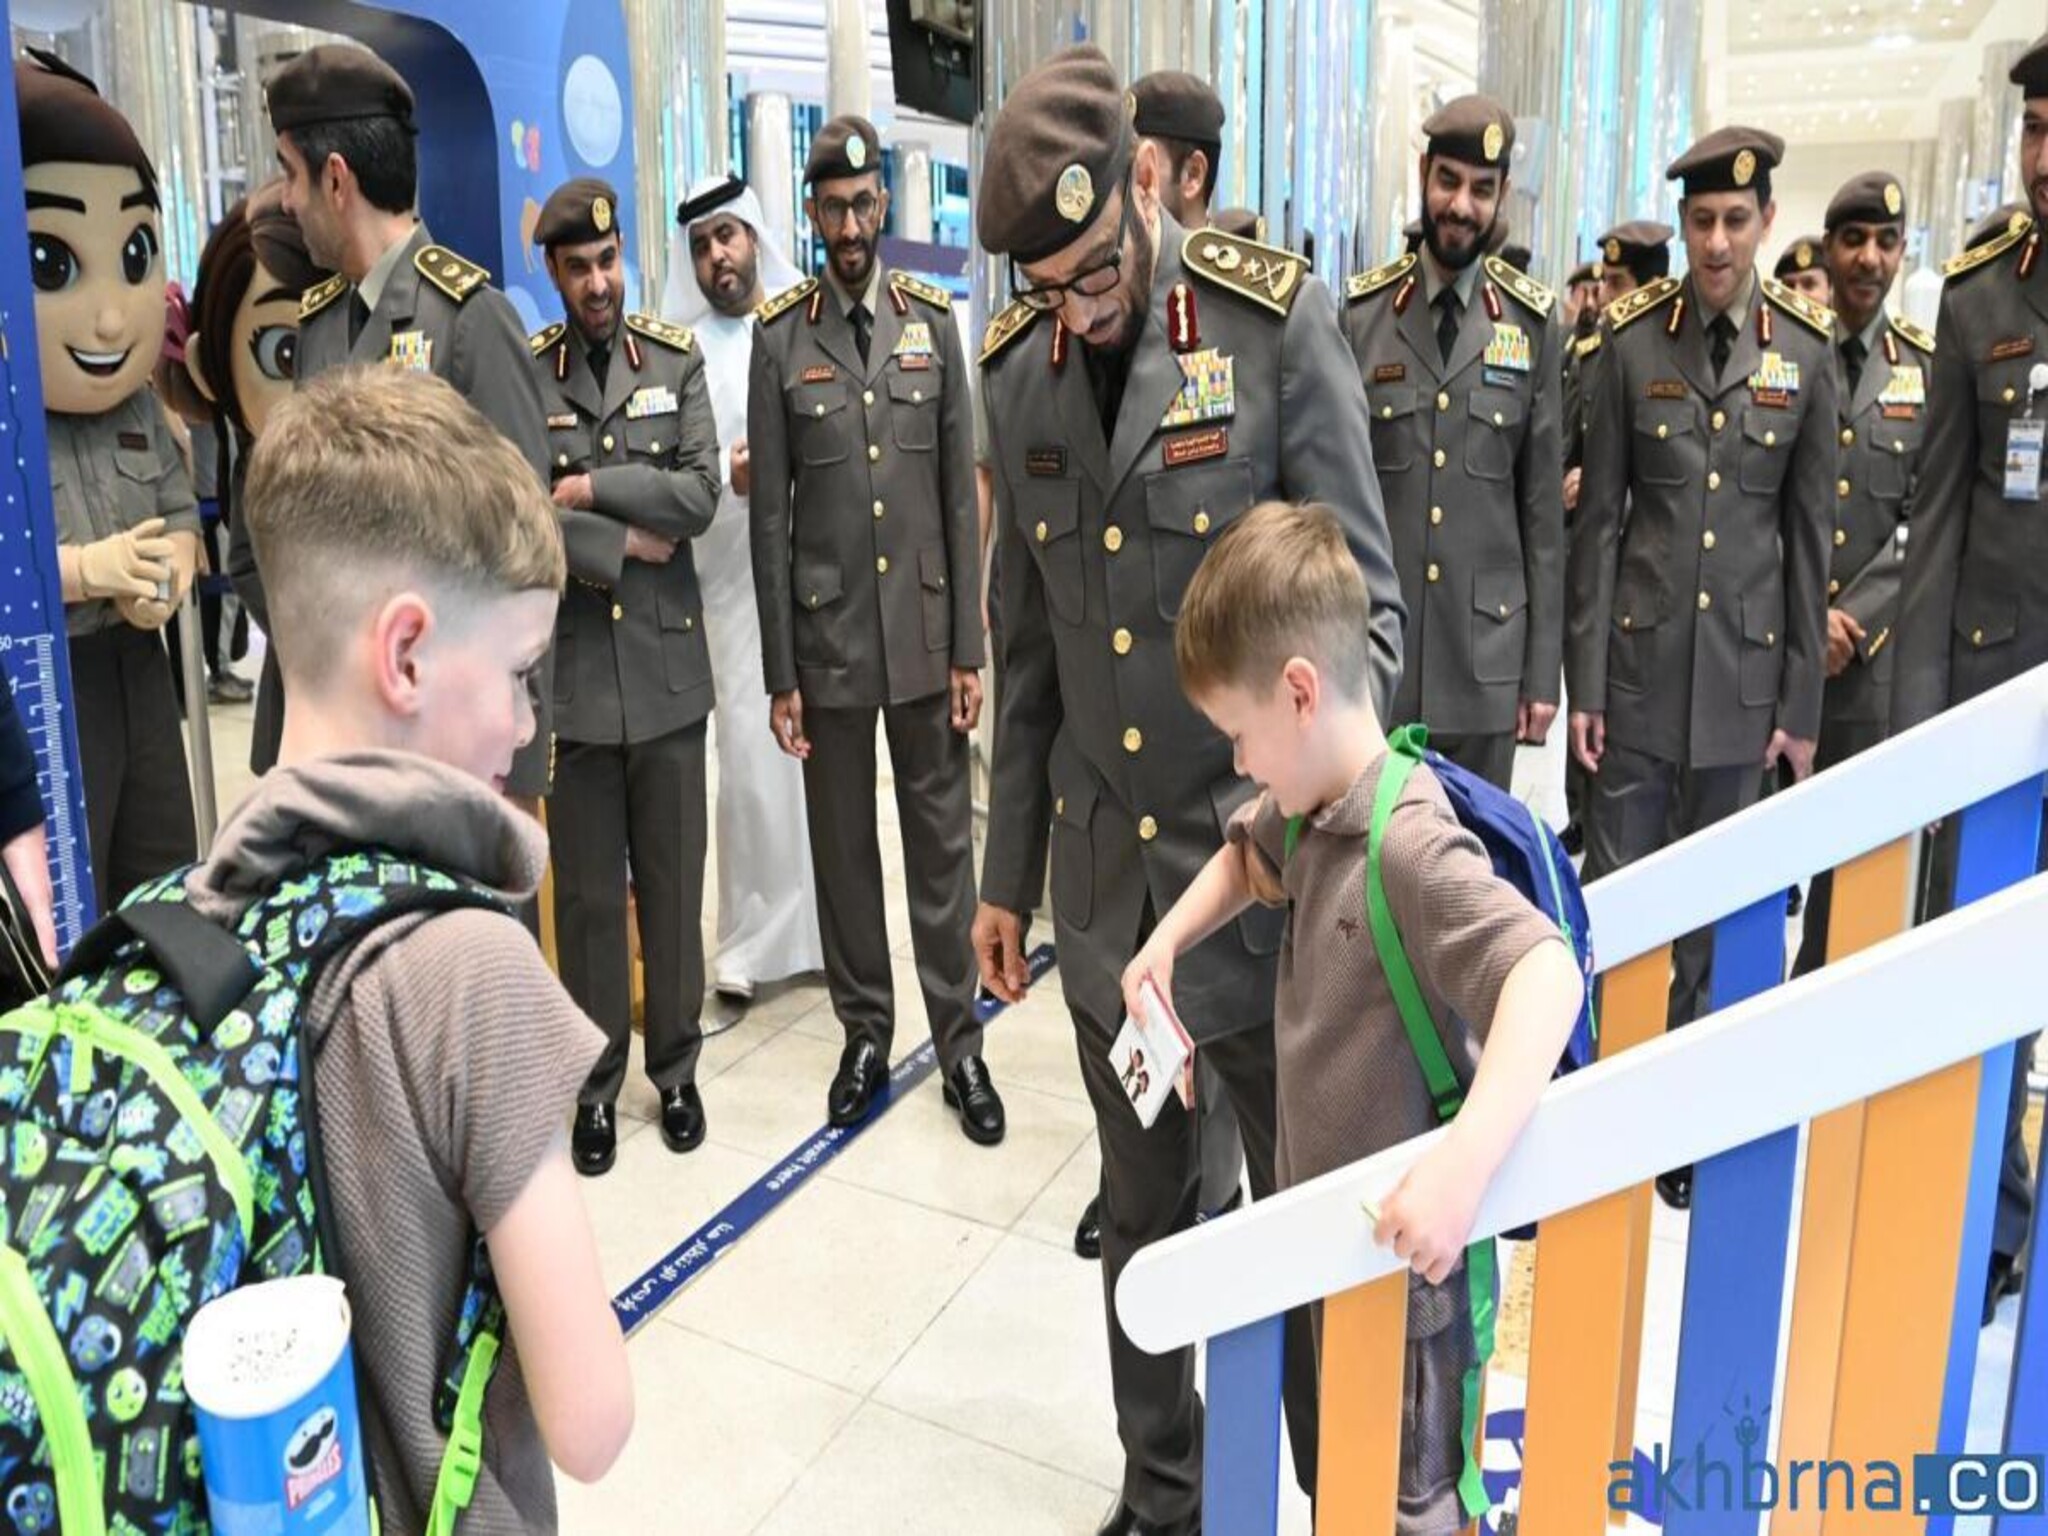 Dubai Airport: Half a million children stamp passports, using "kiddie lane" 